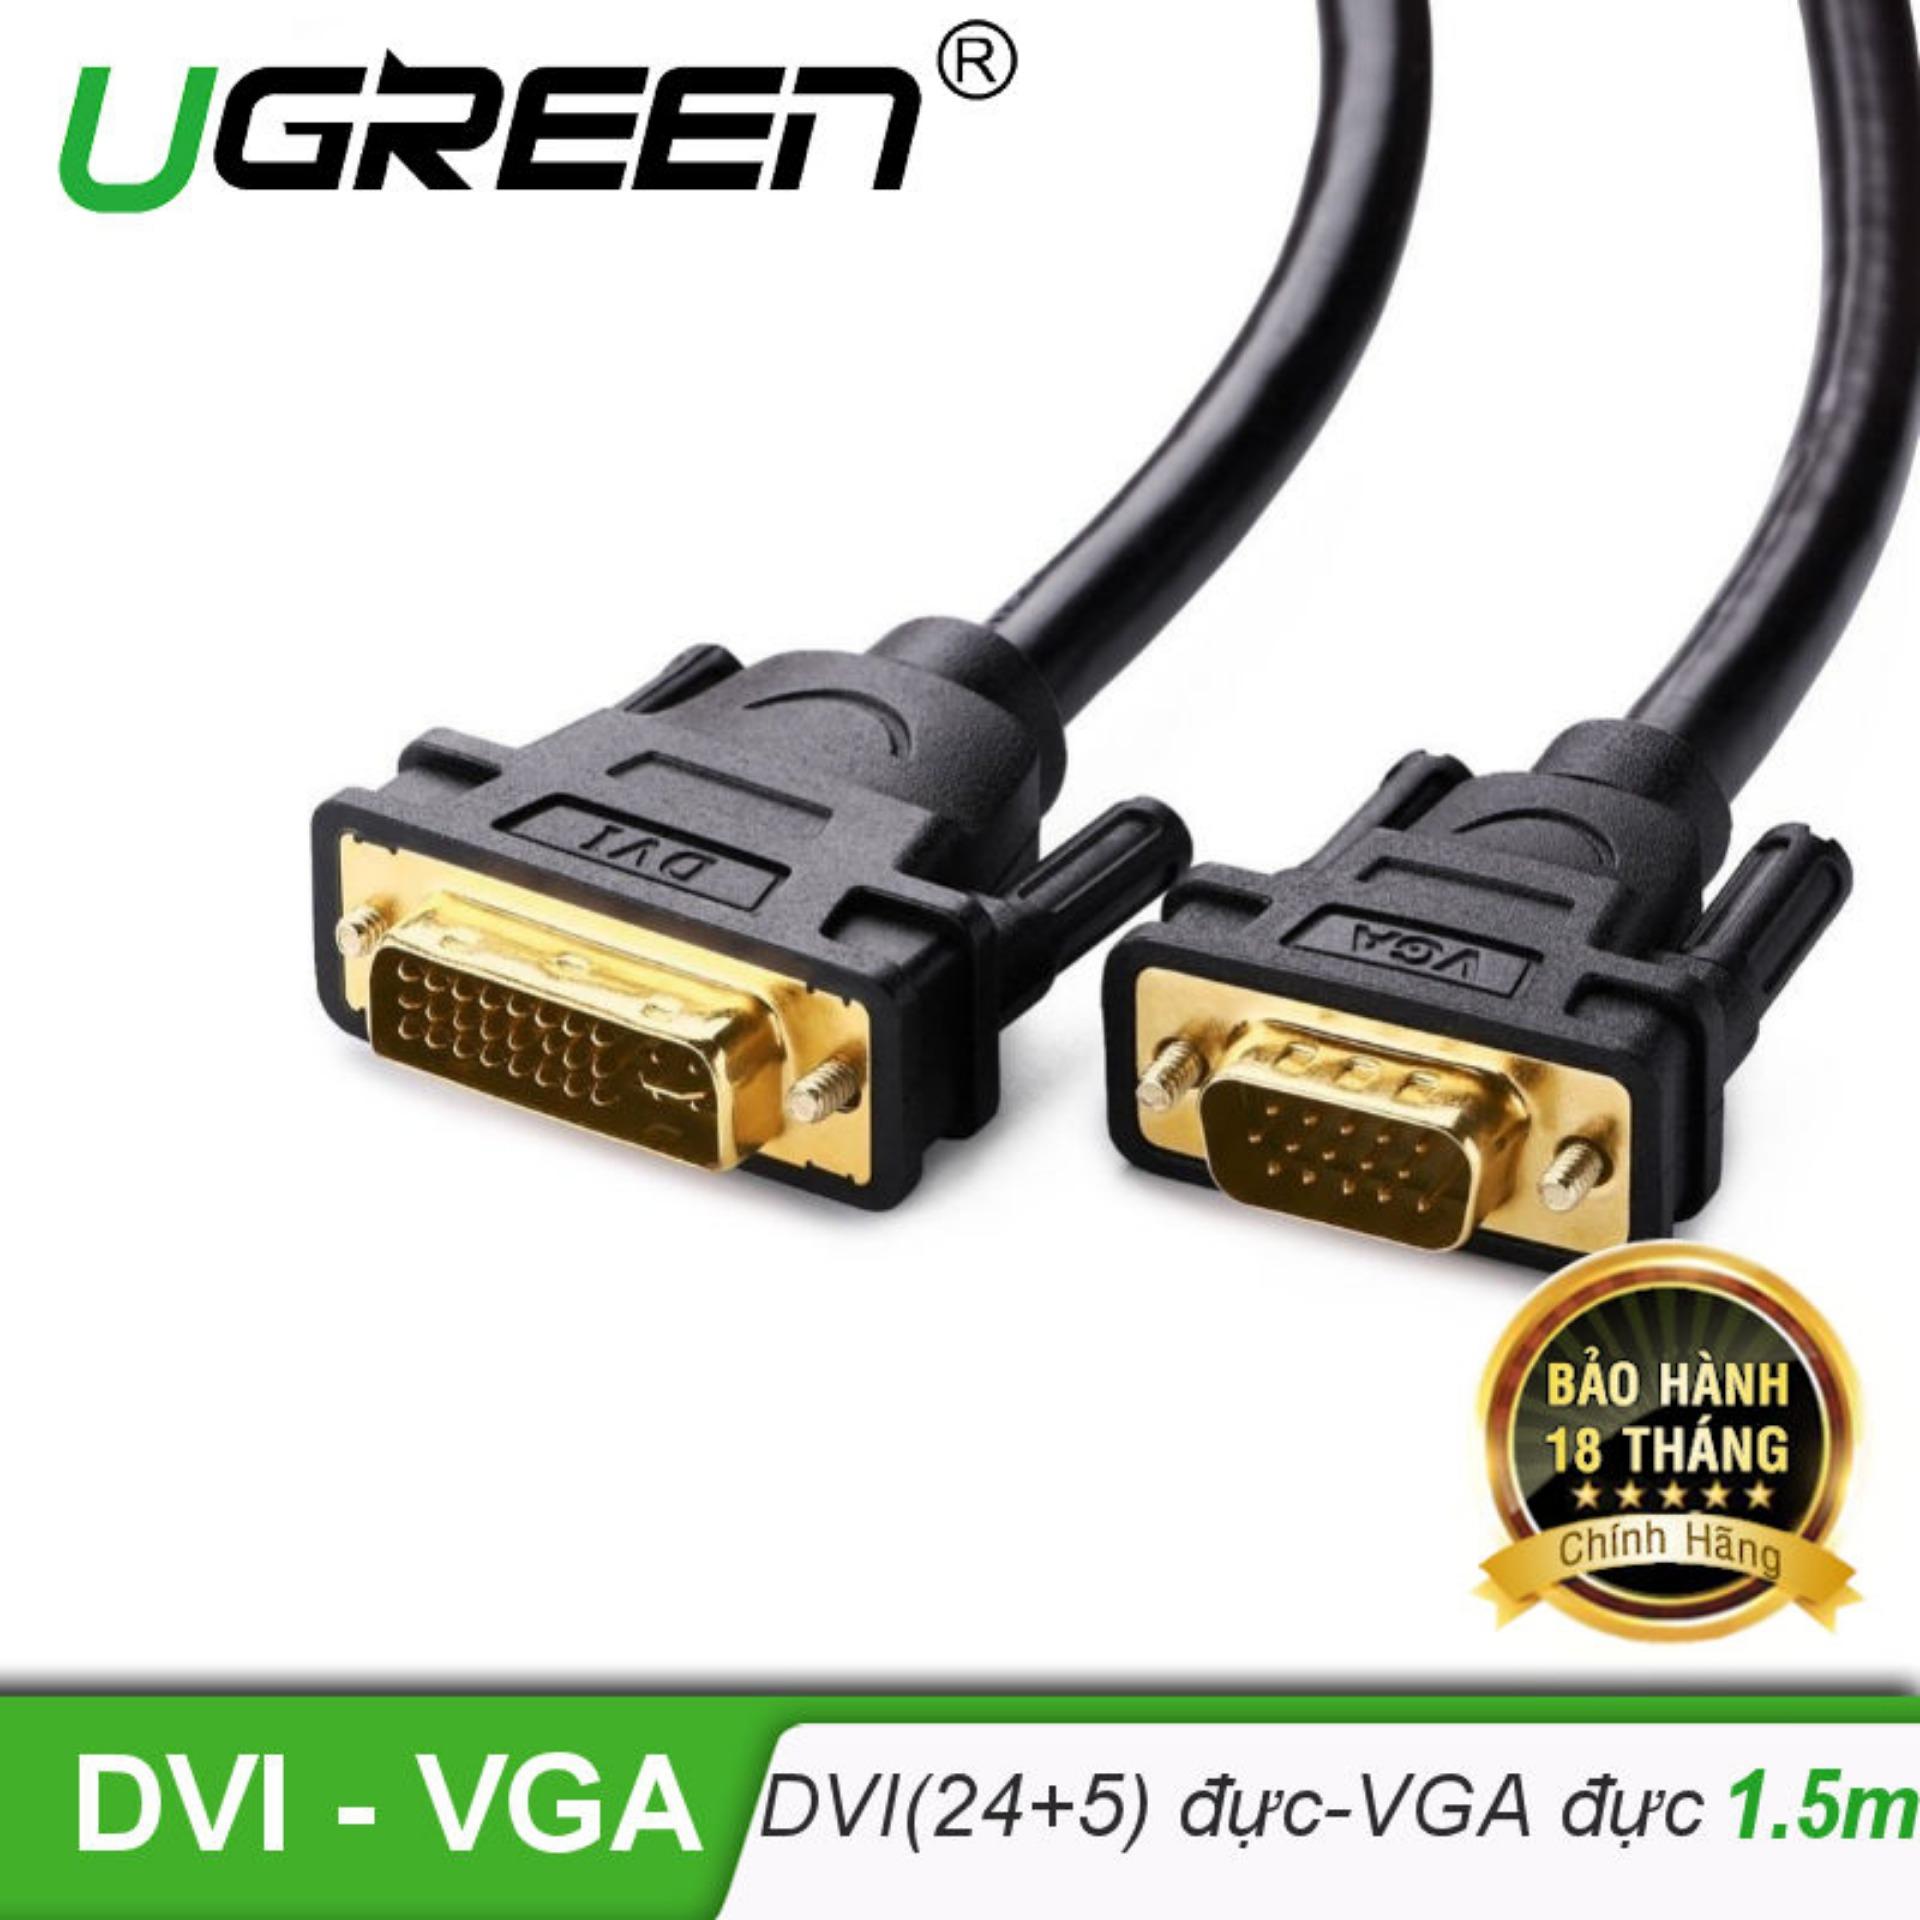 Cáp chuyển DVI-I (24+5) đầu đực sang cổng VGA đực dài 1.5m UGREEN DV102 11617 - Hãng phân phối chính...